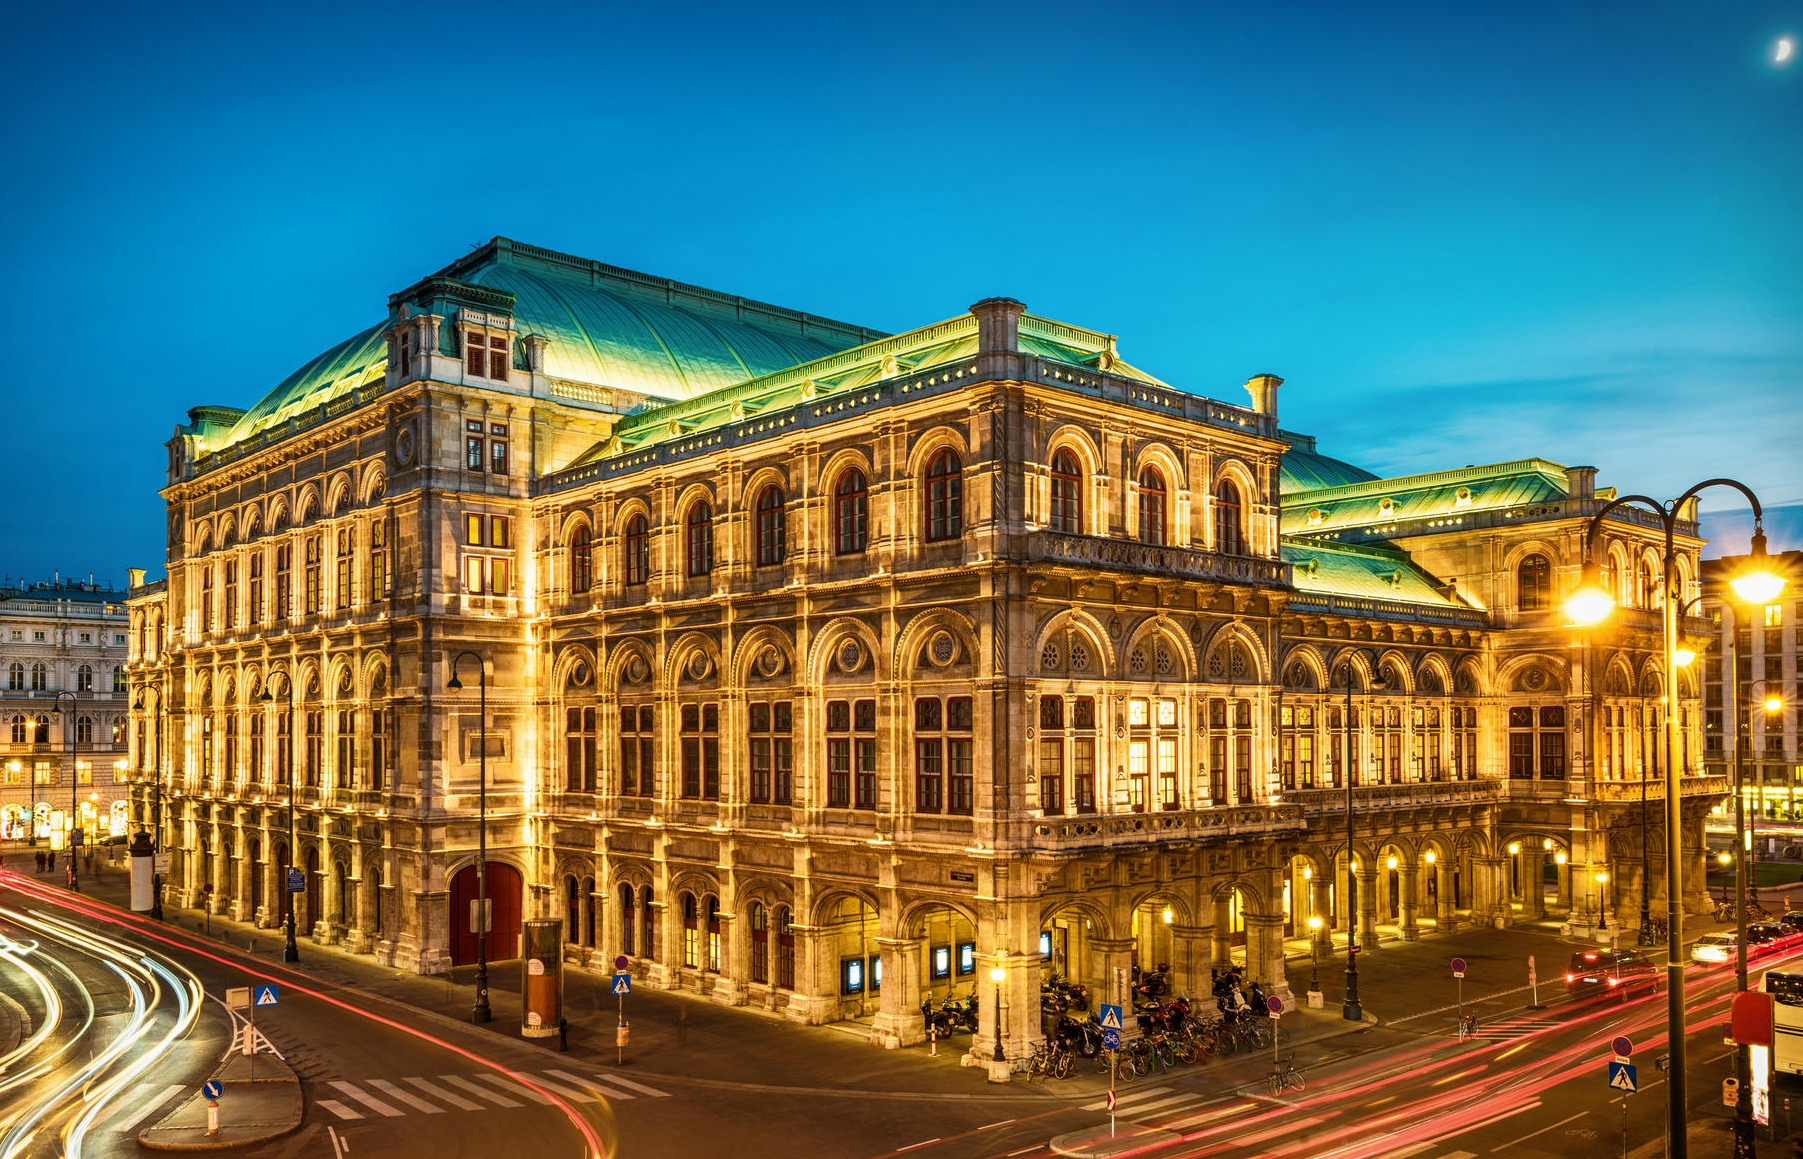 خانه اپرای وین (Vienna State Opera)